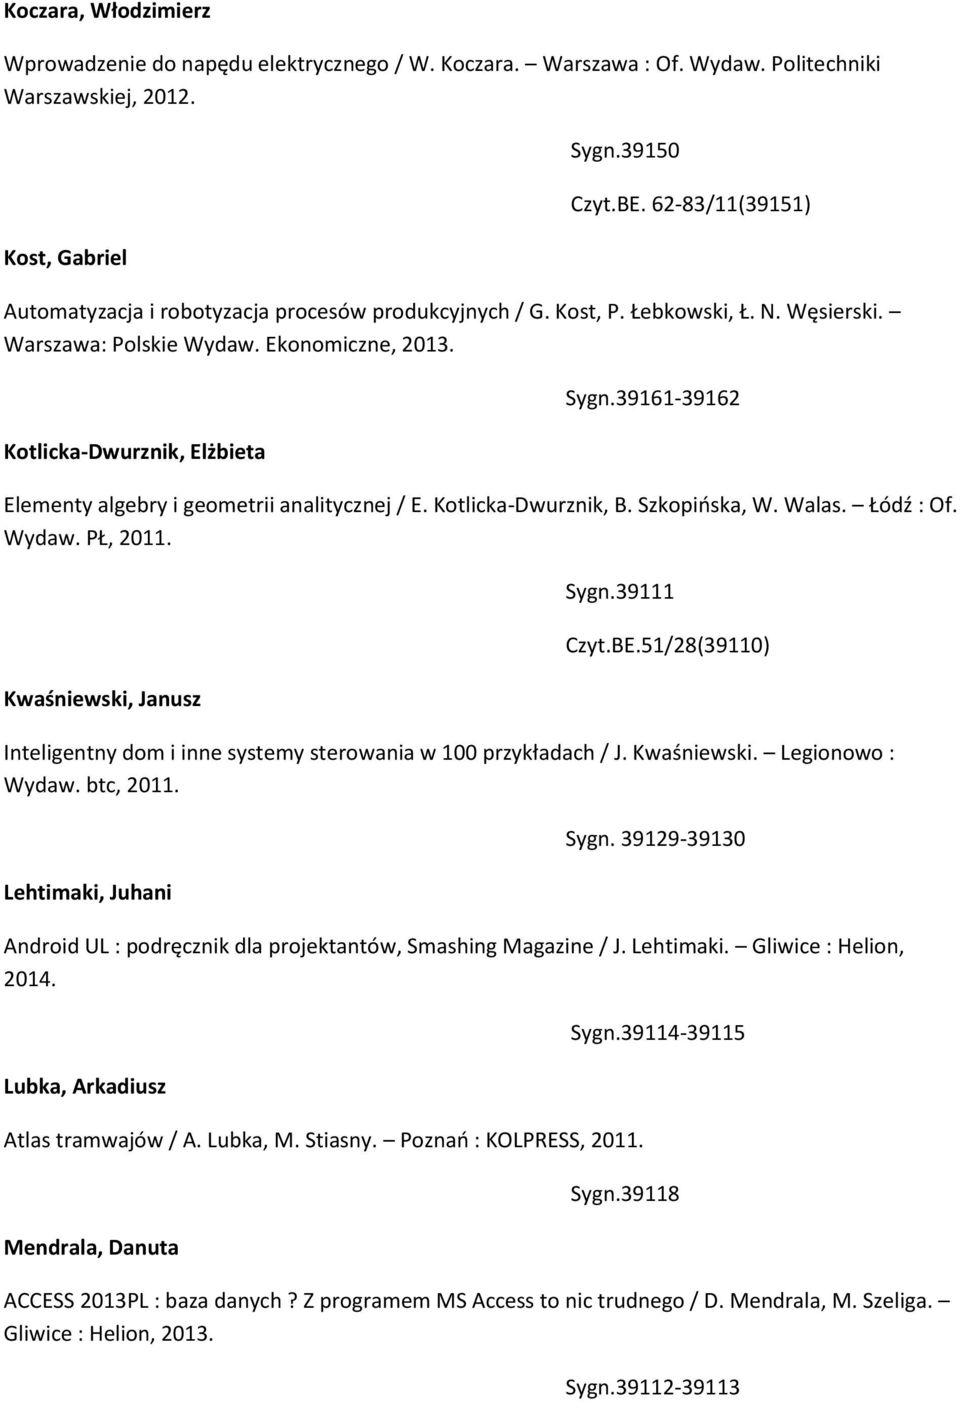 39161-39162 Elementy algebry i geometrii analitycznej / E. Kotlicka-Dwurznik, B. Szkopińska, W. Walas. Łódź : Of. Wydaw. PŁ, 2011. Kwaśniewski, Janusz Sygn.39111 Czyt.BE.